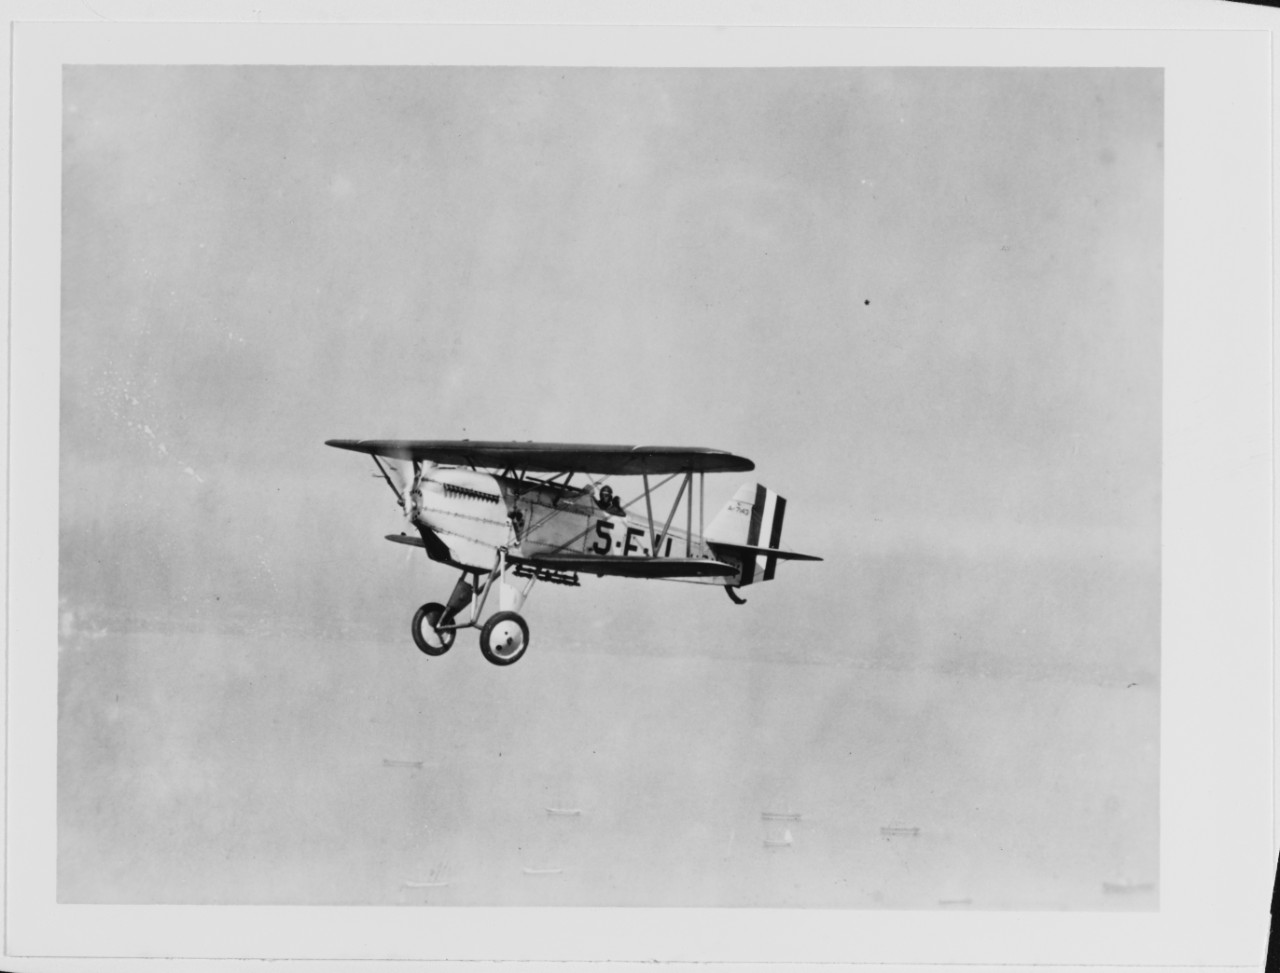 Curtiss F63-3 "Hawk" fighter (BU# A-7143)